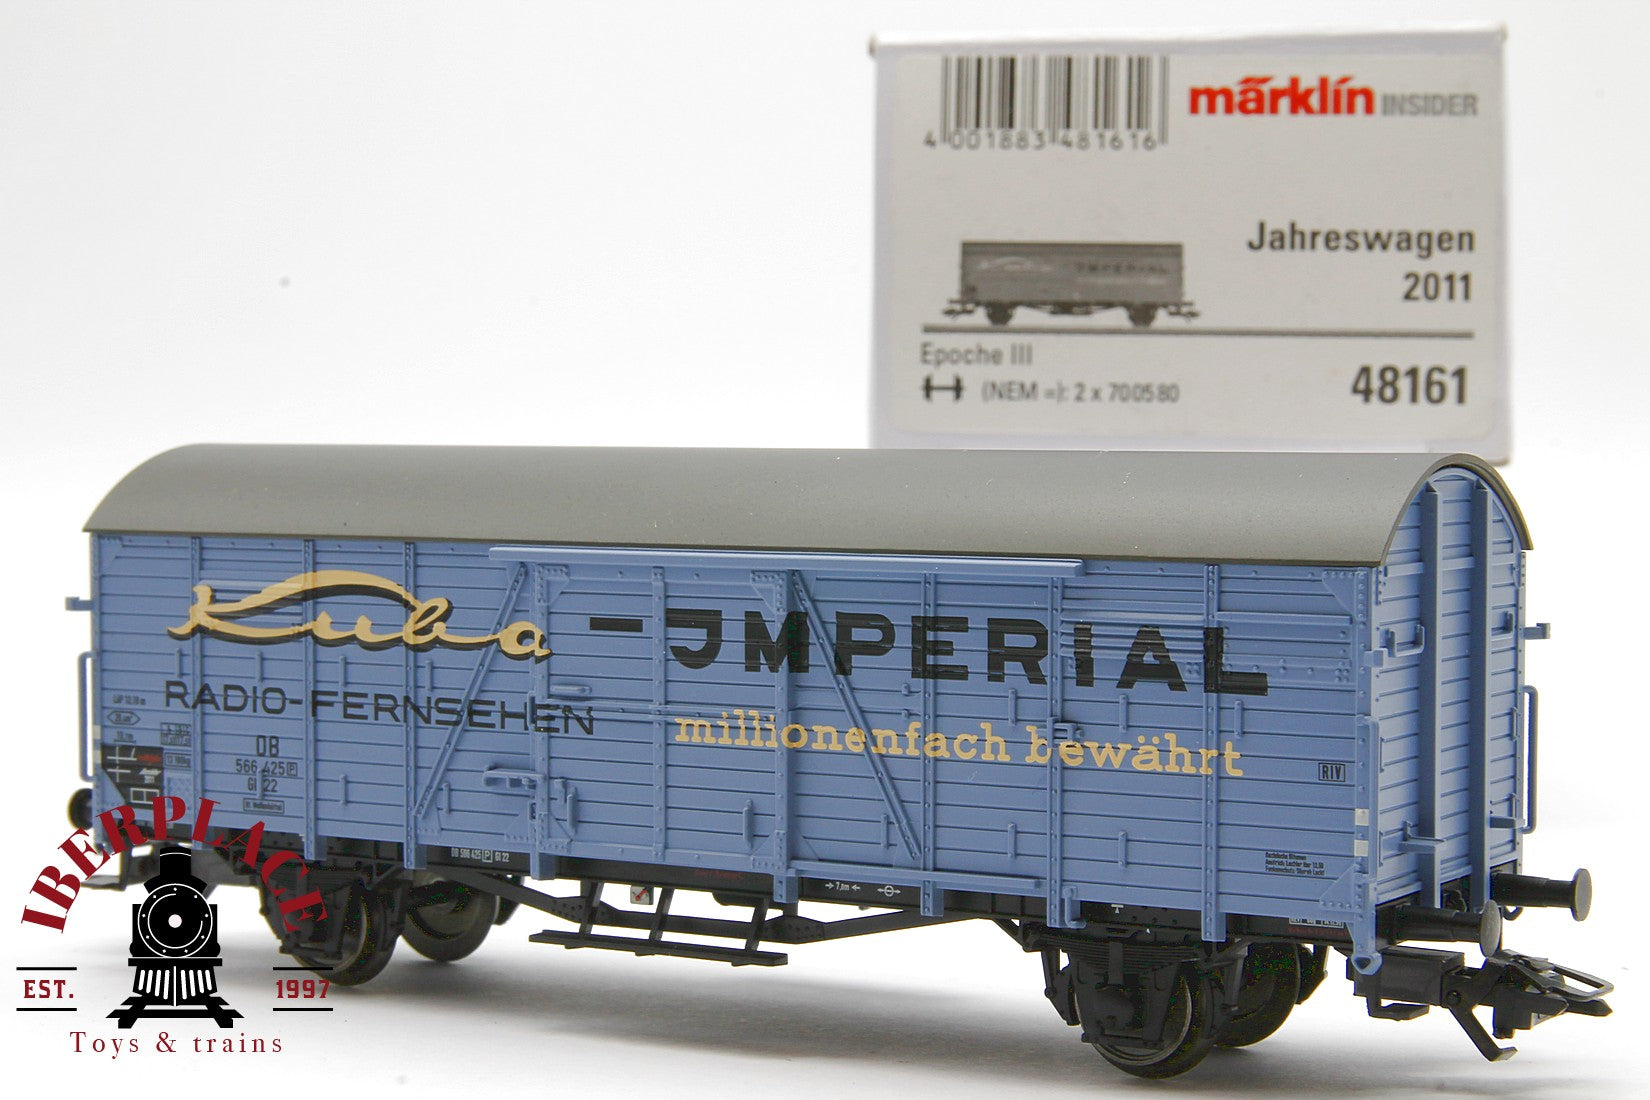 Märklin insider 48161 vagón mercancías DB 566 425 H0 escala 1:87 ho 00